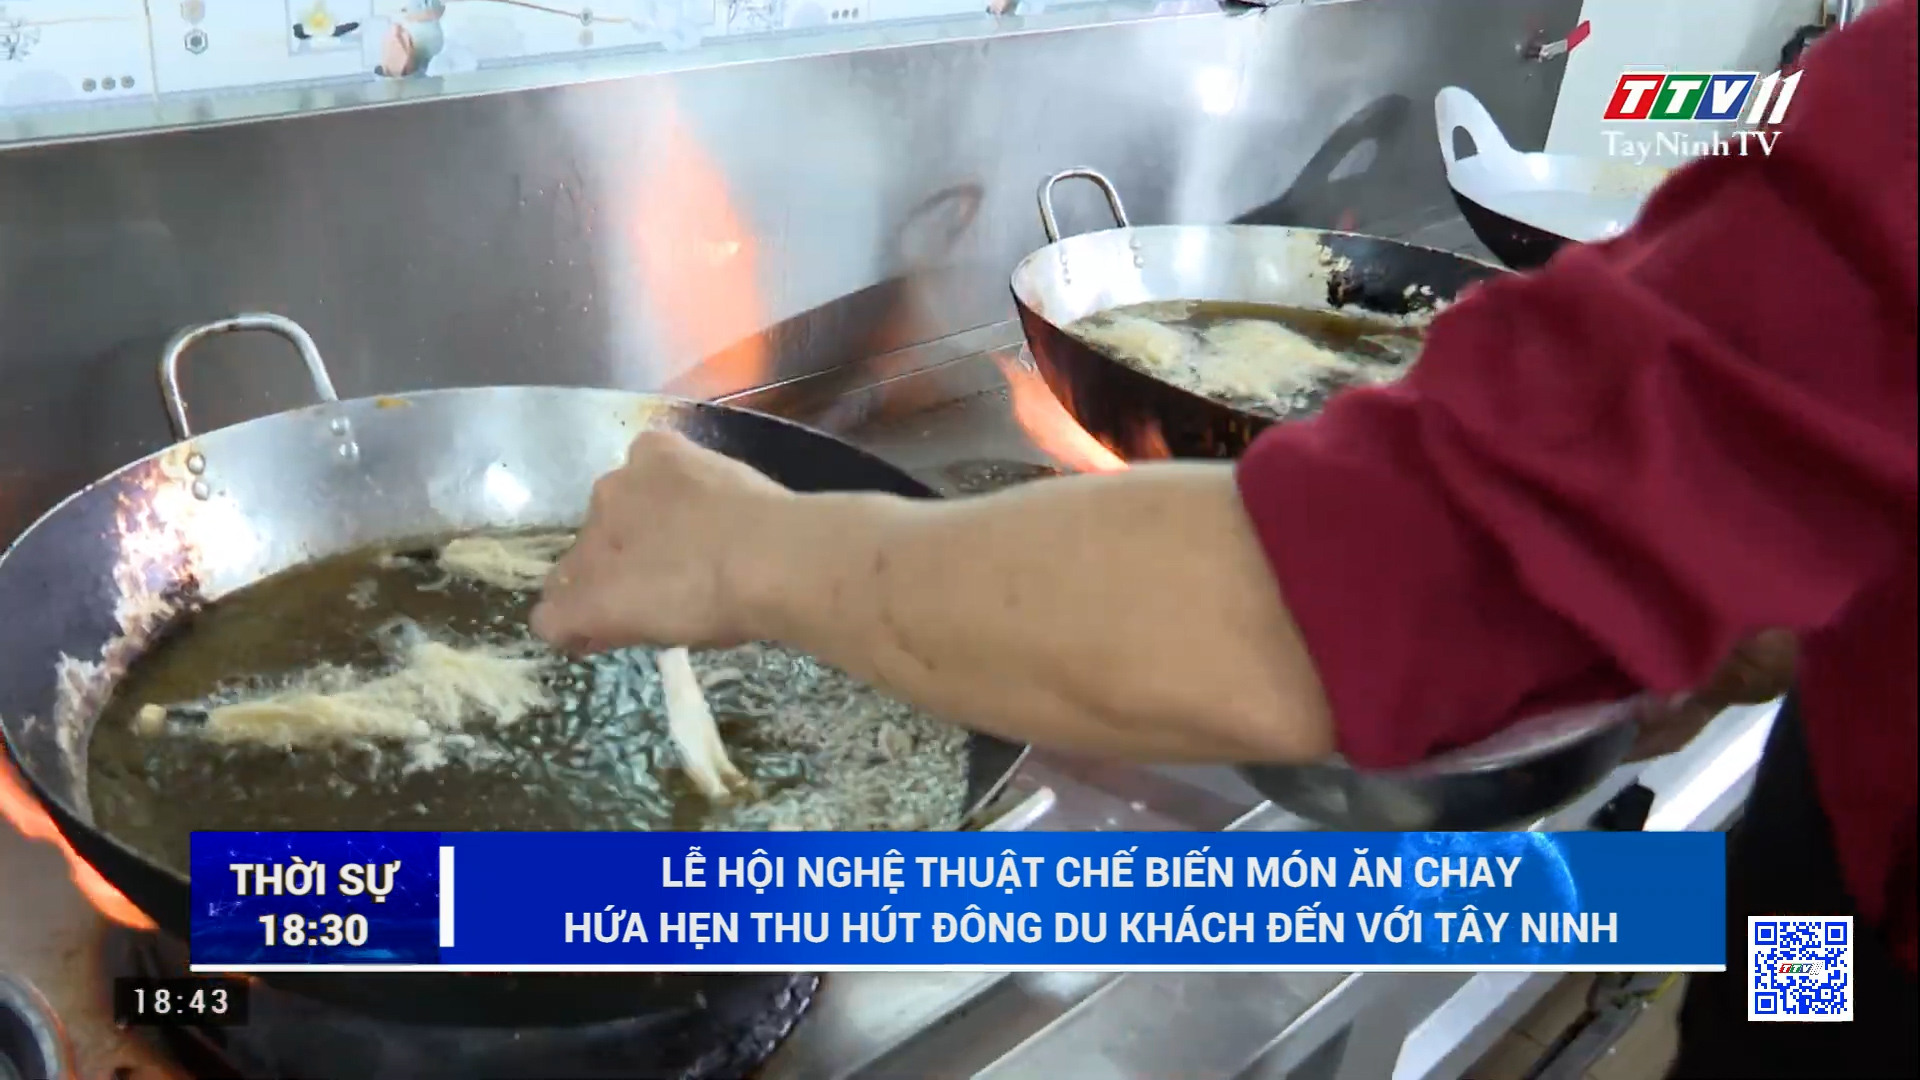 Lễ hội Nghệ thuật chế biến món ăn chay hứa hẹn thu hút đông du khách đến với Tây Ninh | TayNinhTV